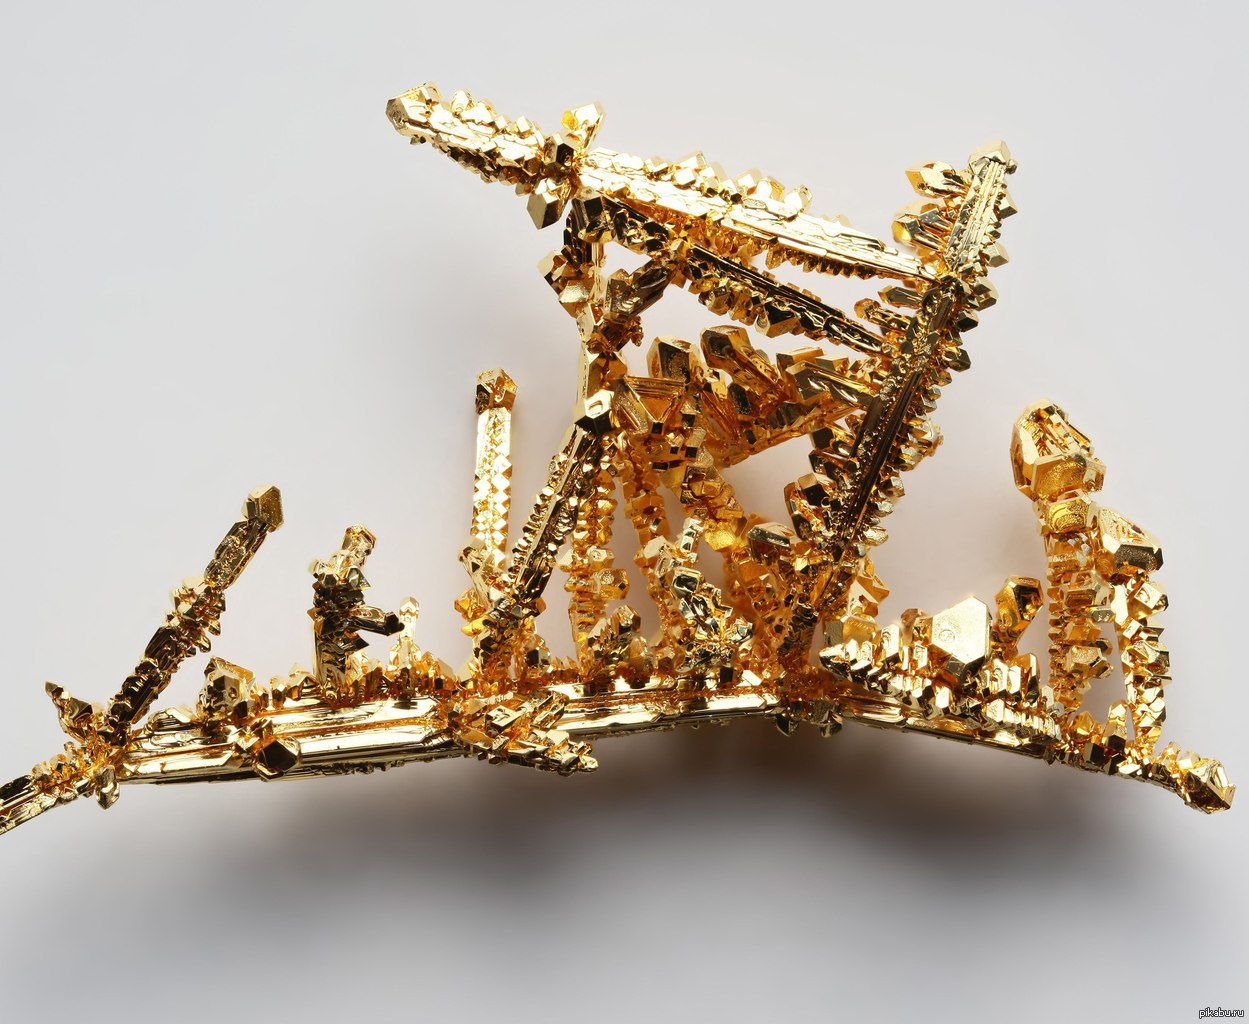 Variable gold. Золото. Кристаллы металлов. Кристаллизированное золото. Золотые объекты.